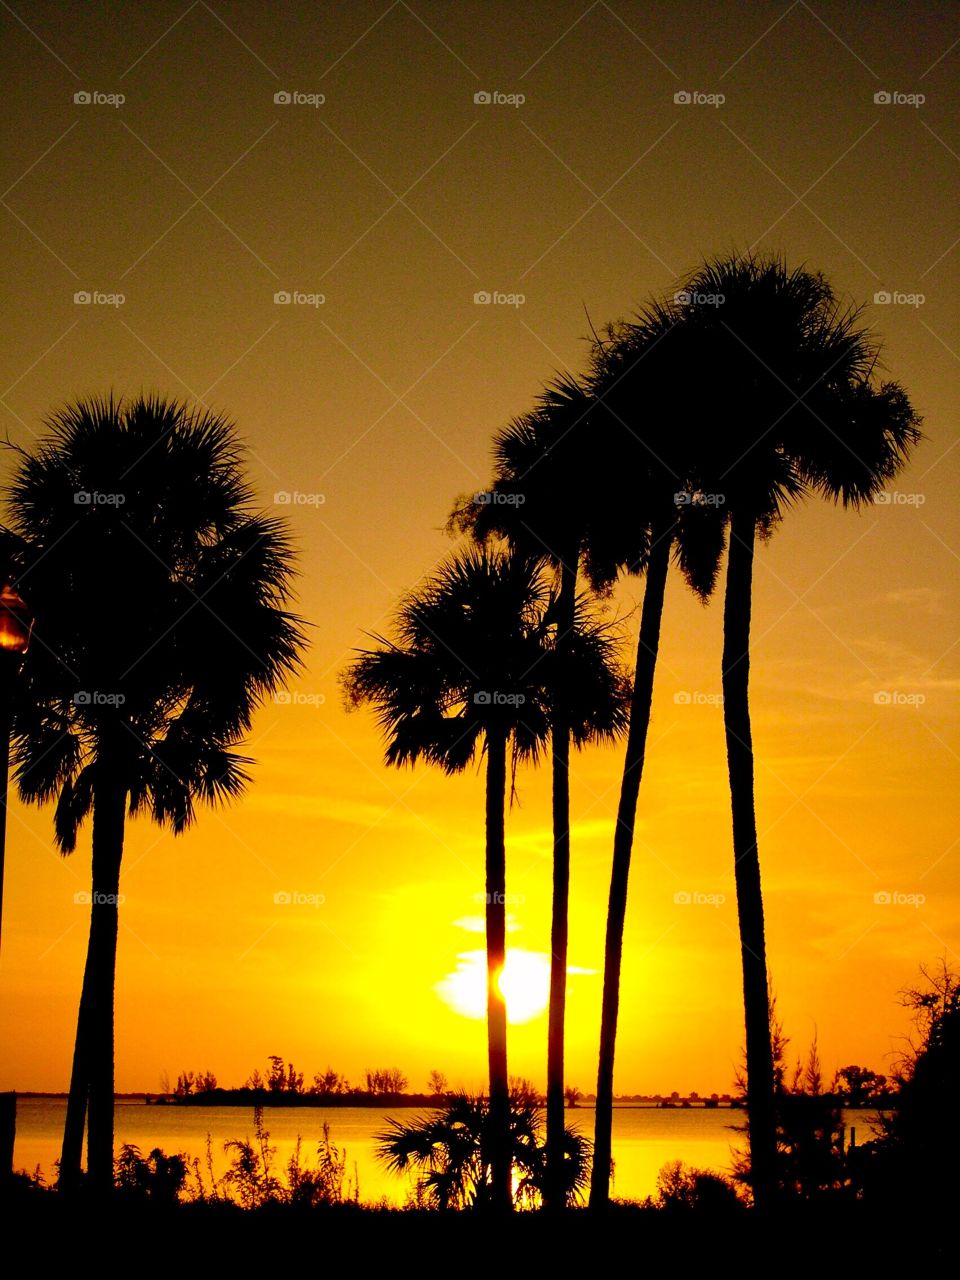 Beautiful Florida view